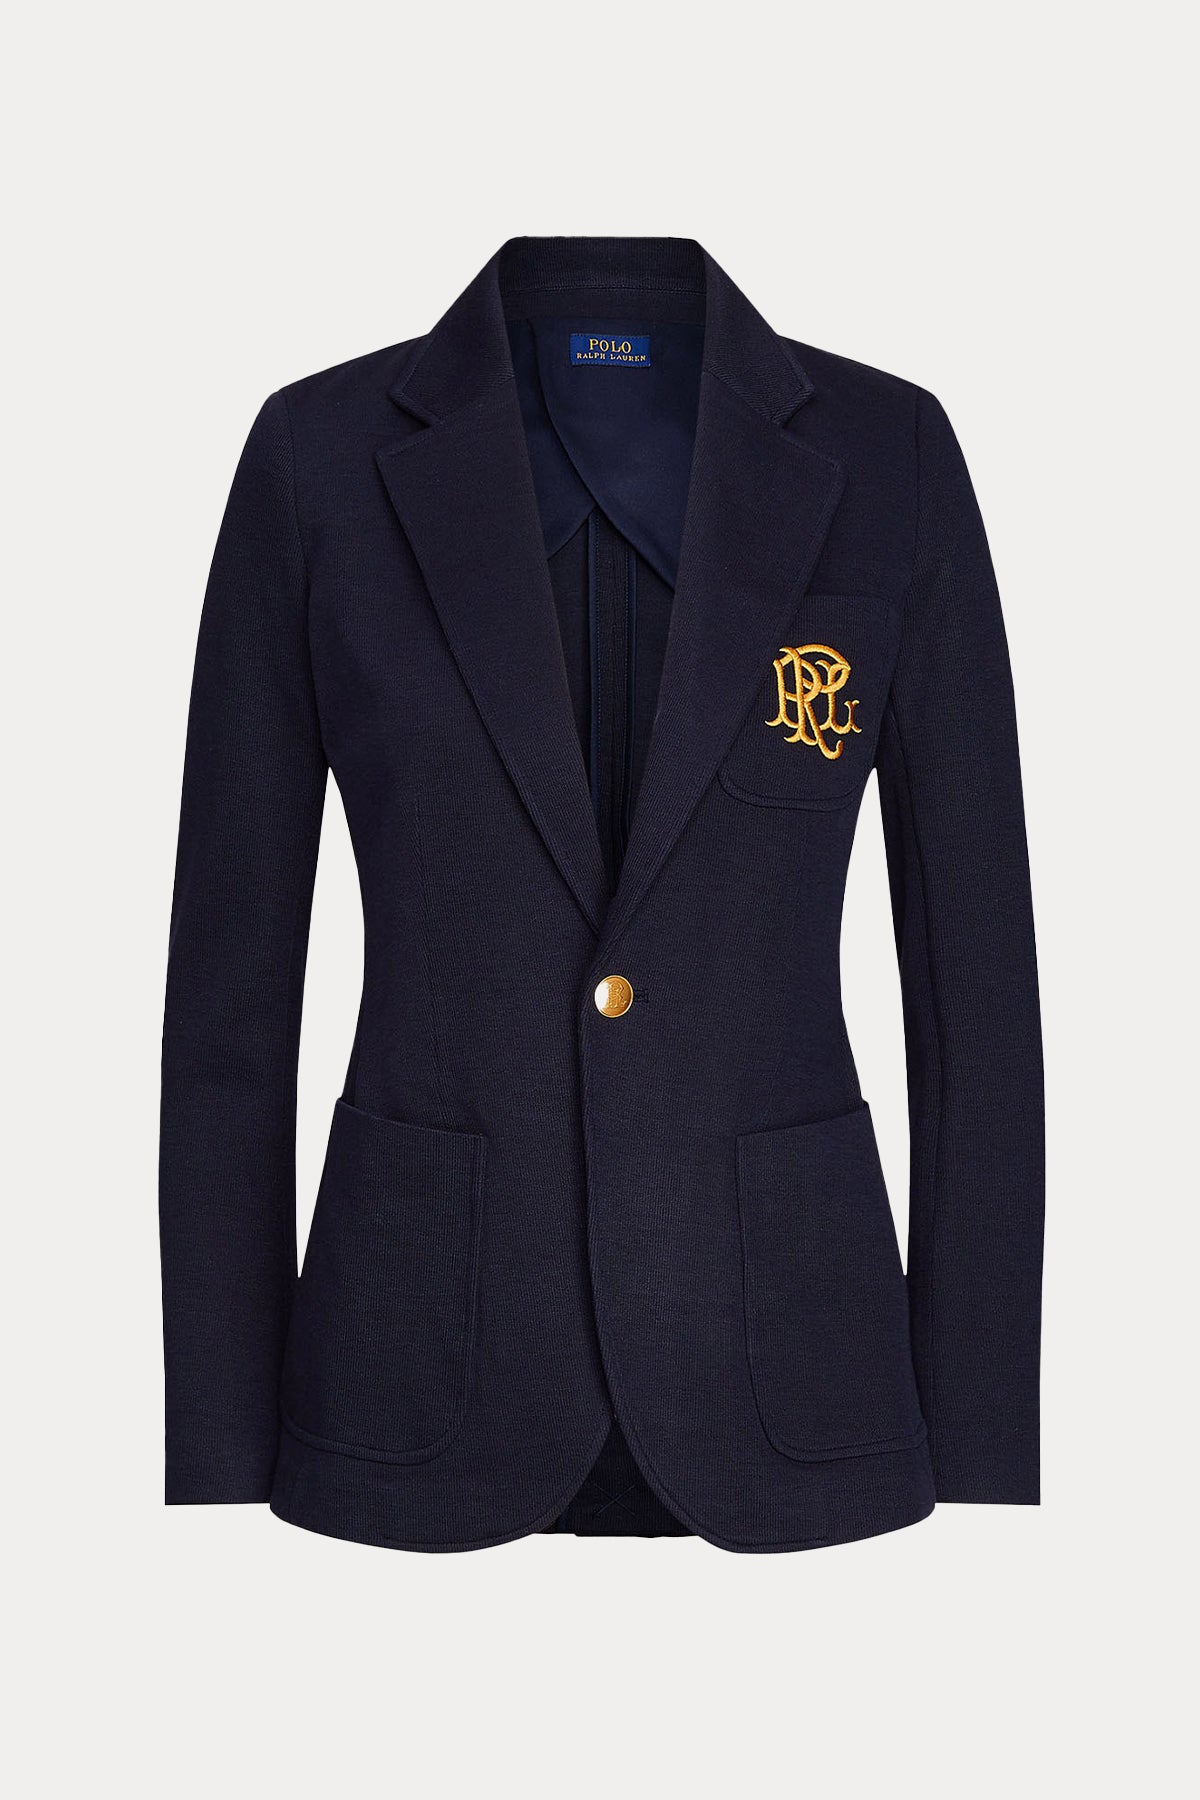 Polo Ralph Lauren Nakış Logolu Spor Cepli Blazer Ceket